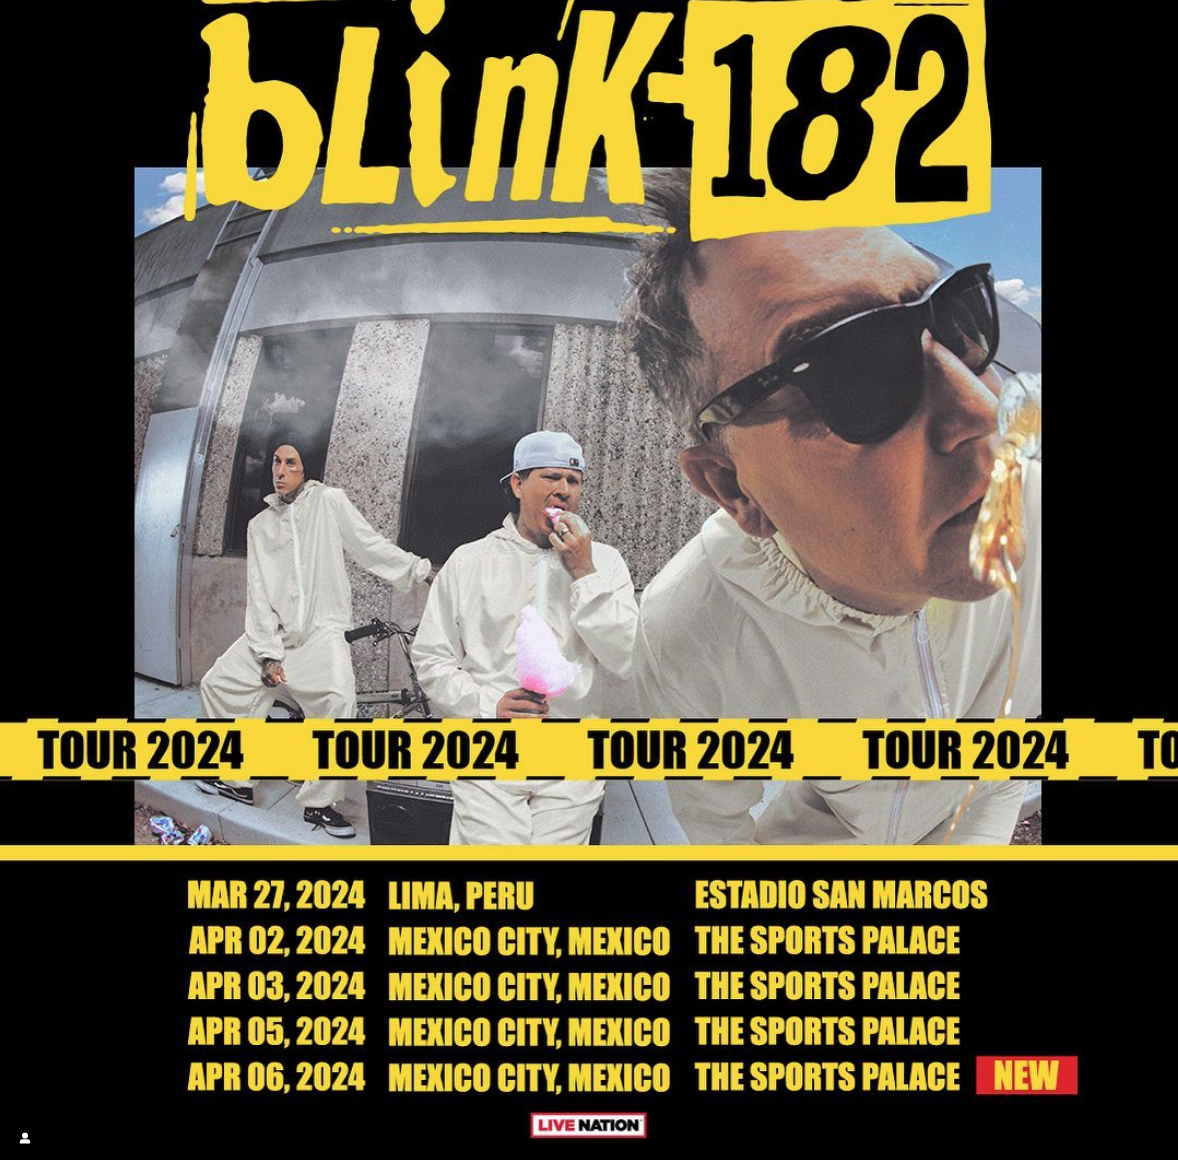 Anuncia Blink182 nuevas fechas para sus conciertos en México